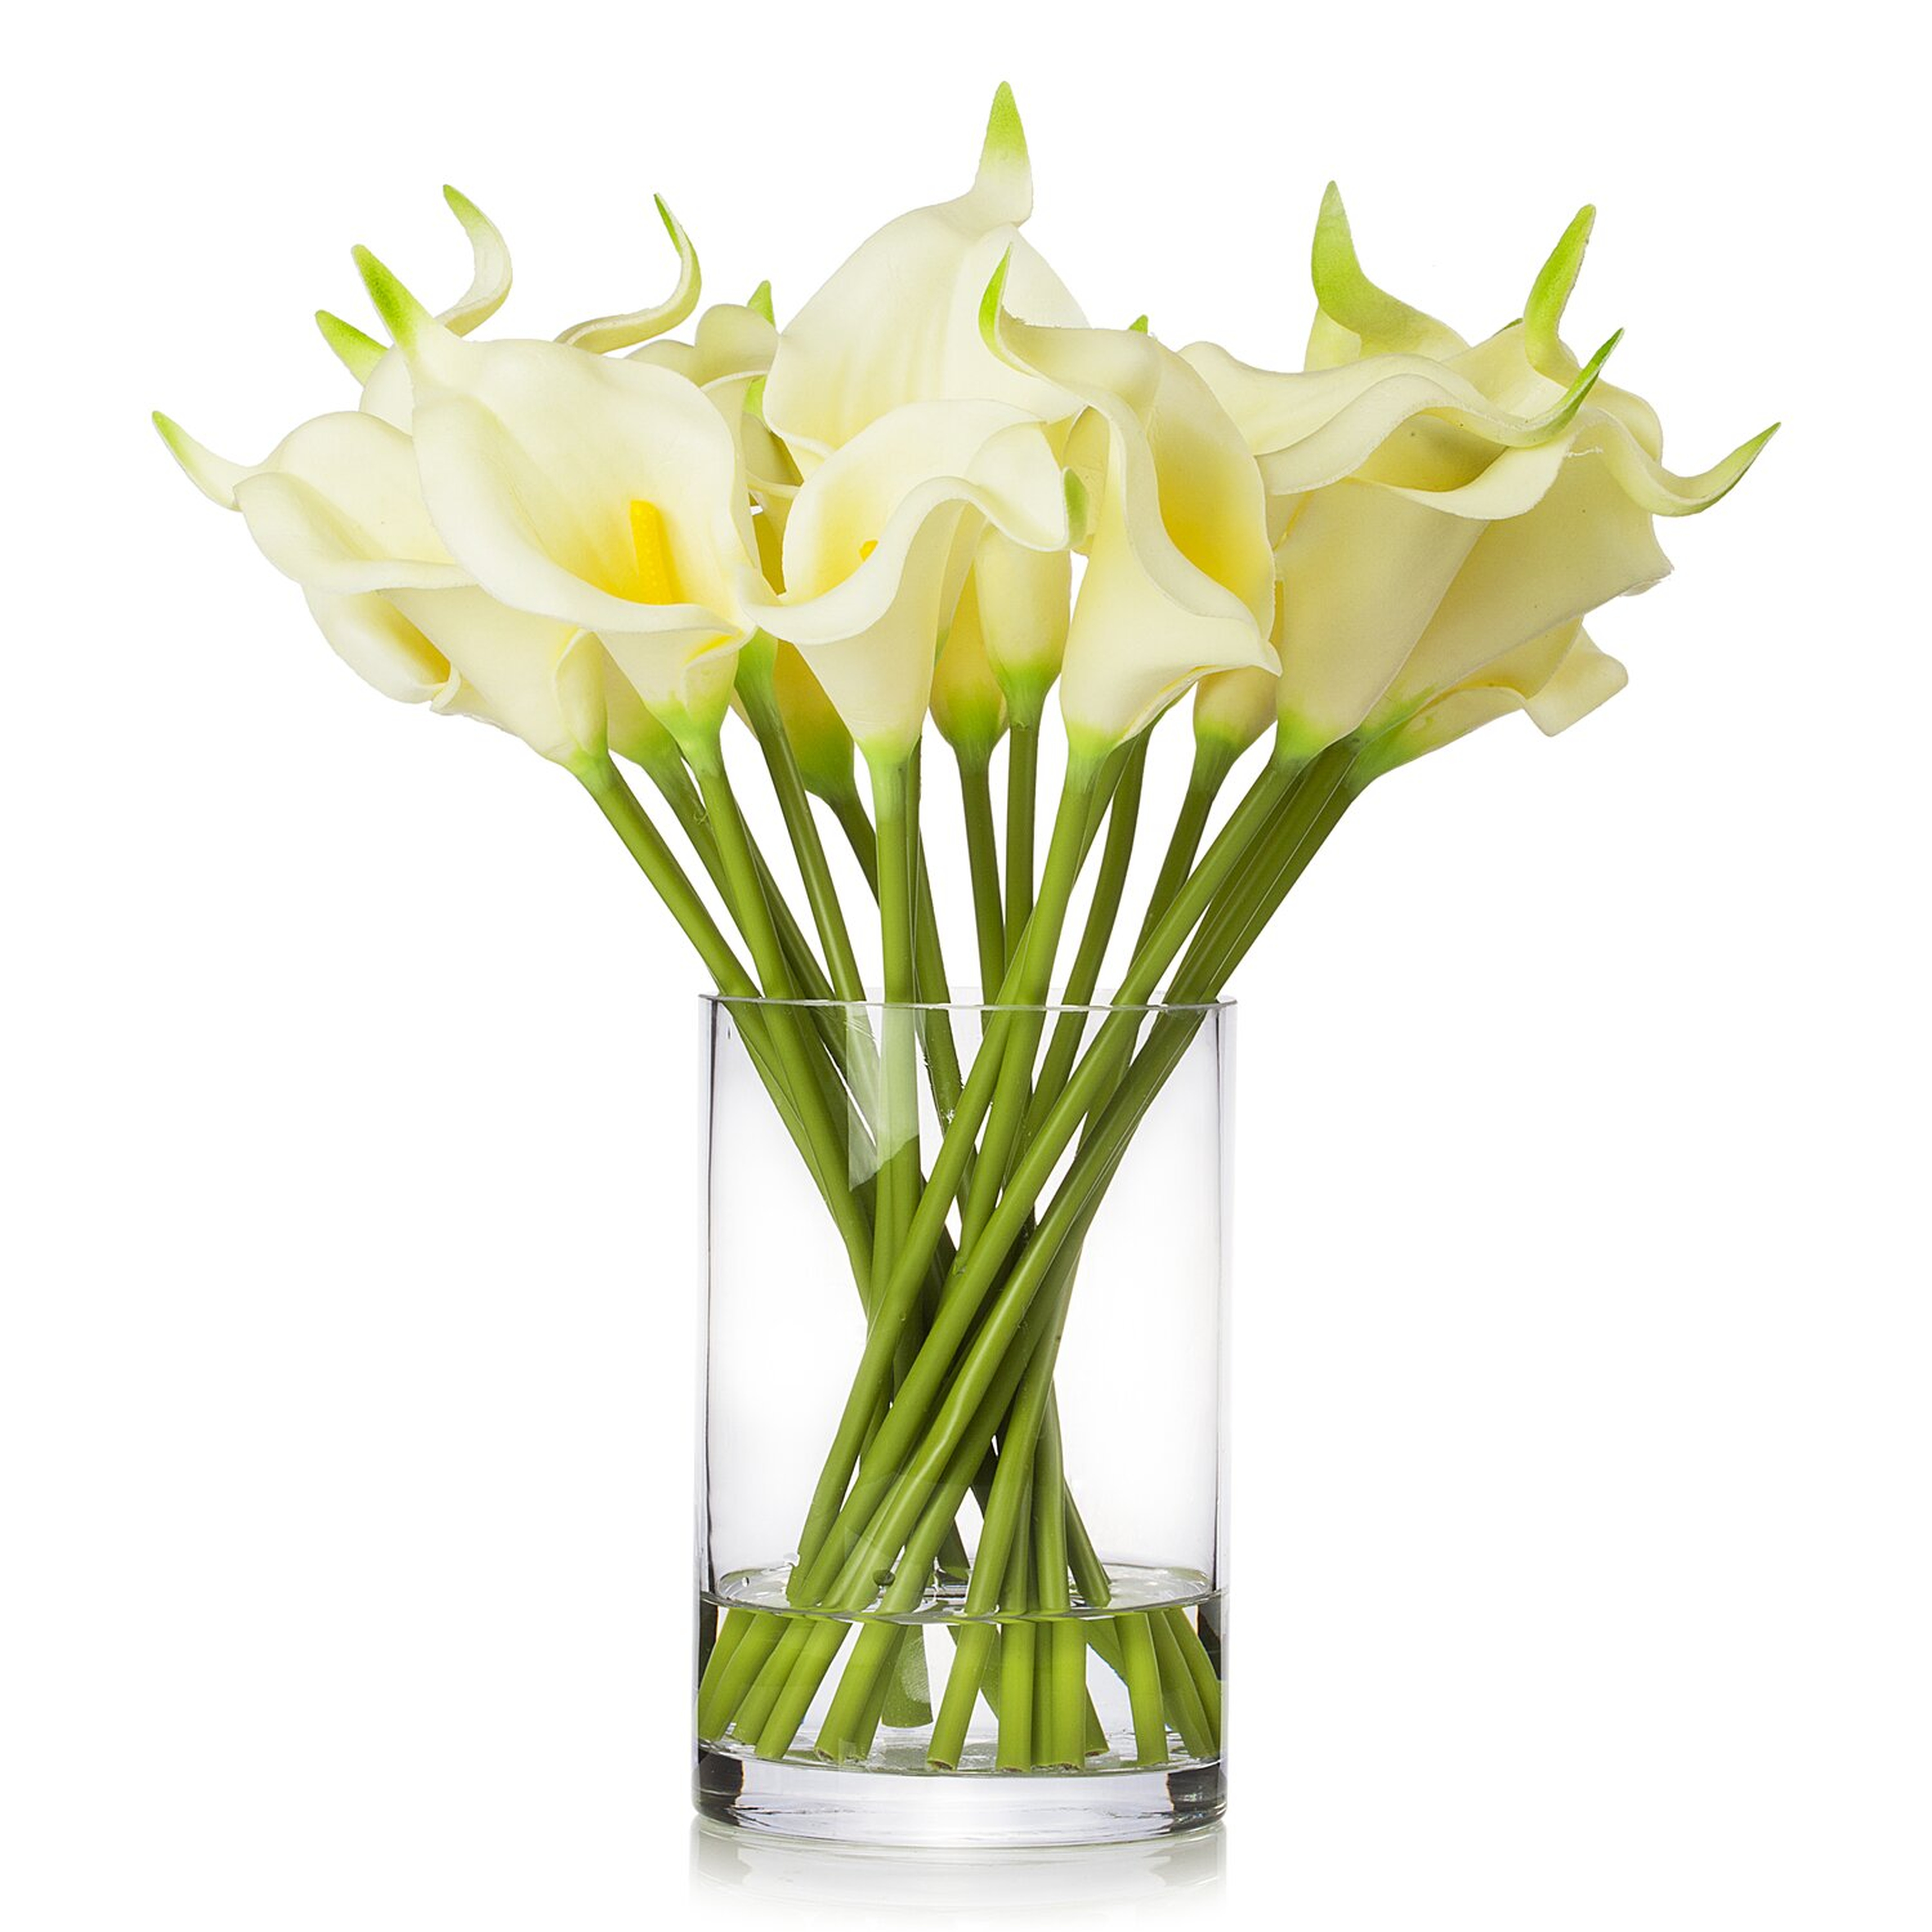 Lilies Flower Arrangement in Vase - Wayfair